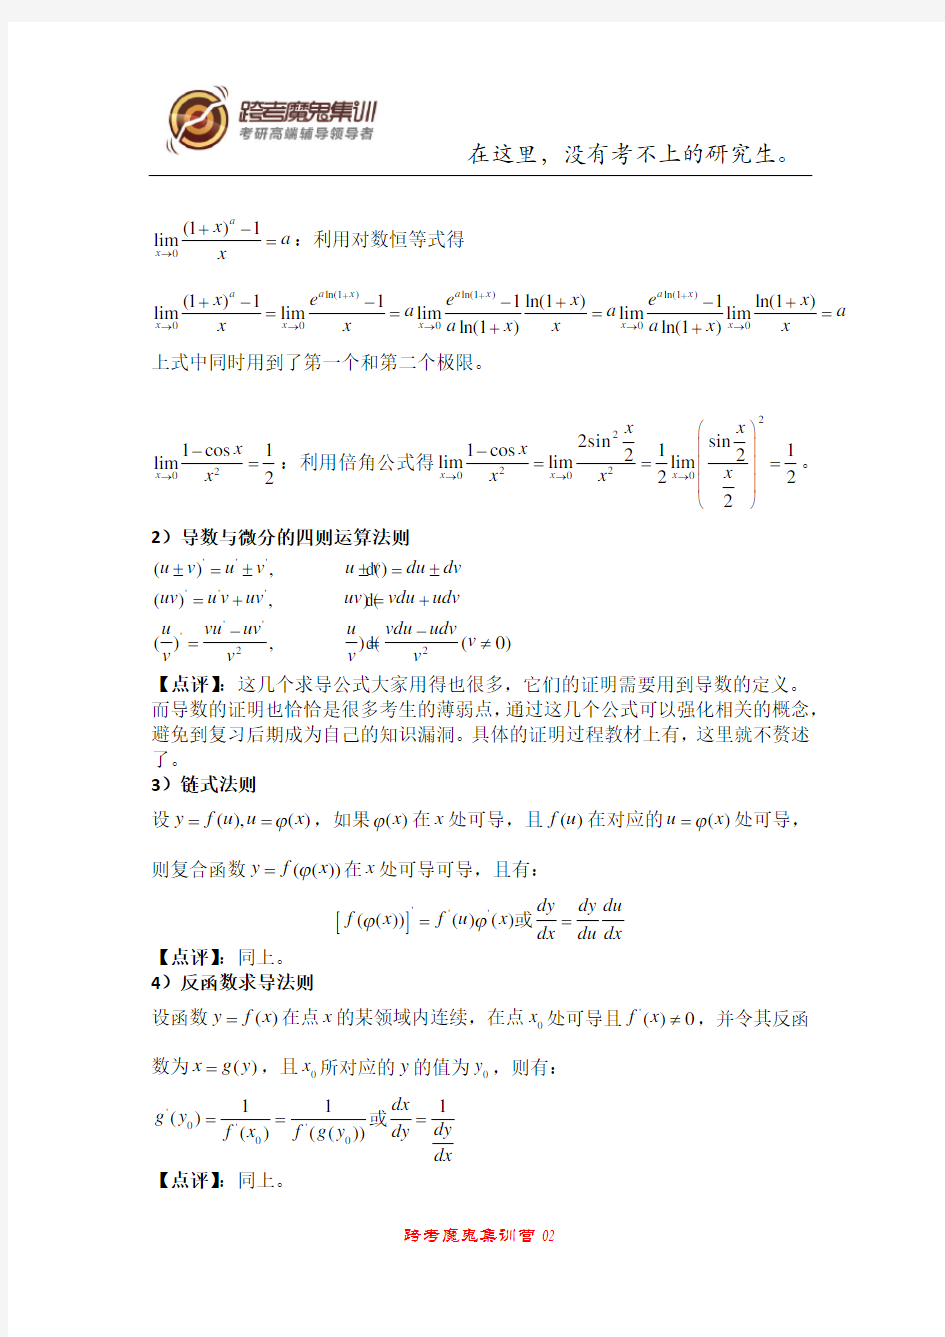 (完整版)高数中的重要定理与公式及其证明(一)